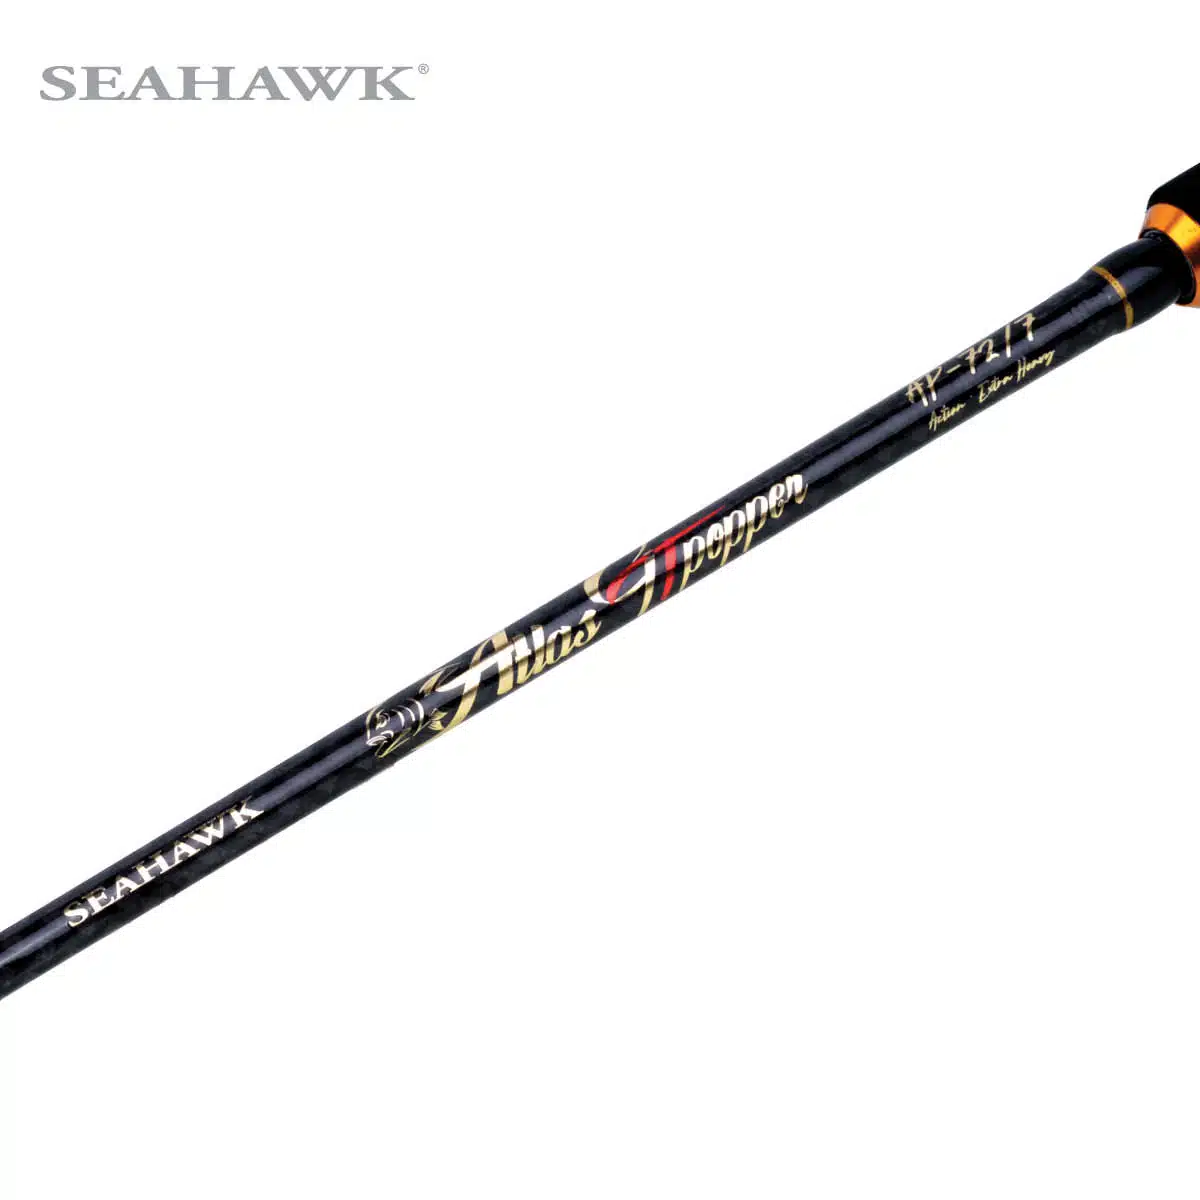 Seahawk Atlas GT Popper 07